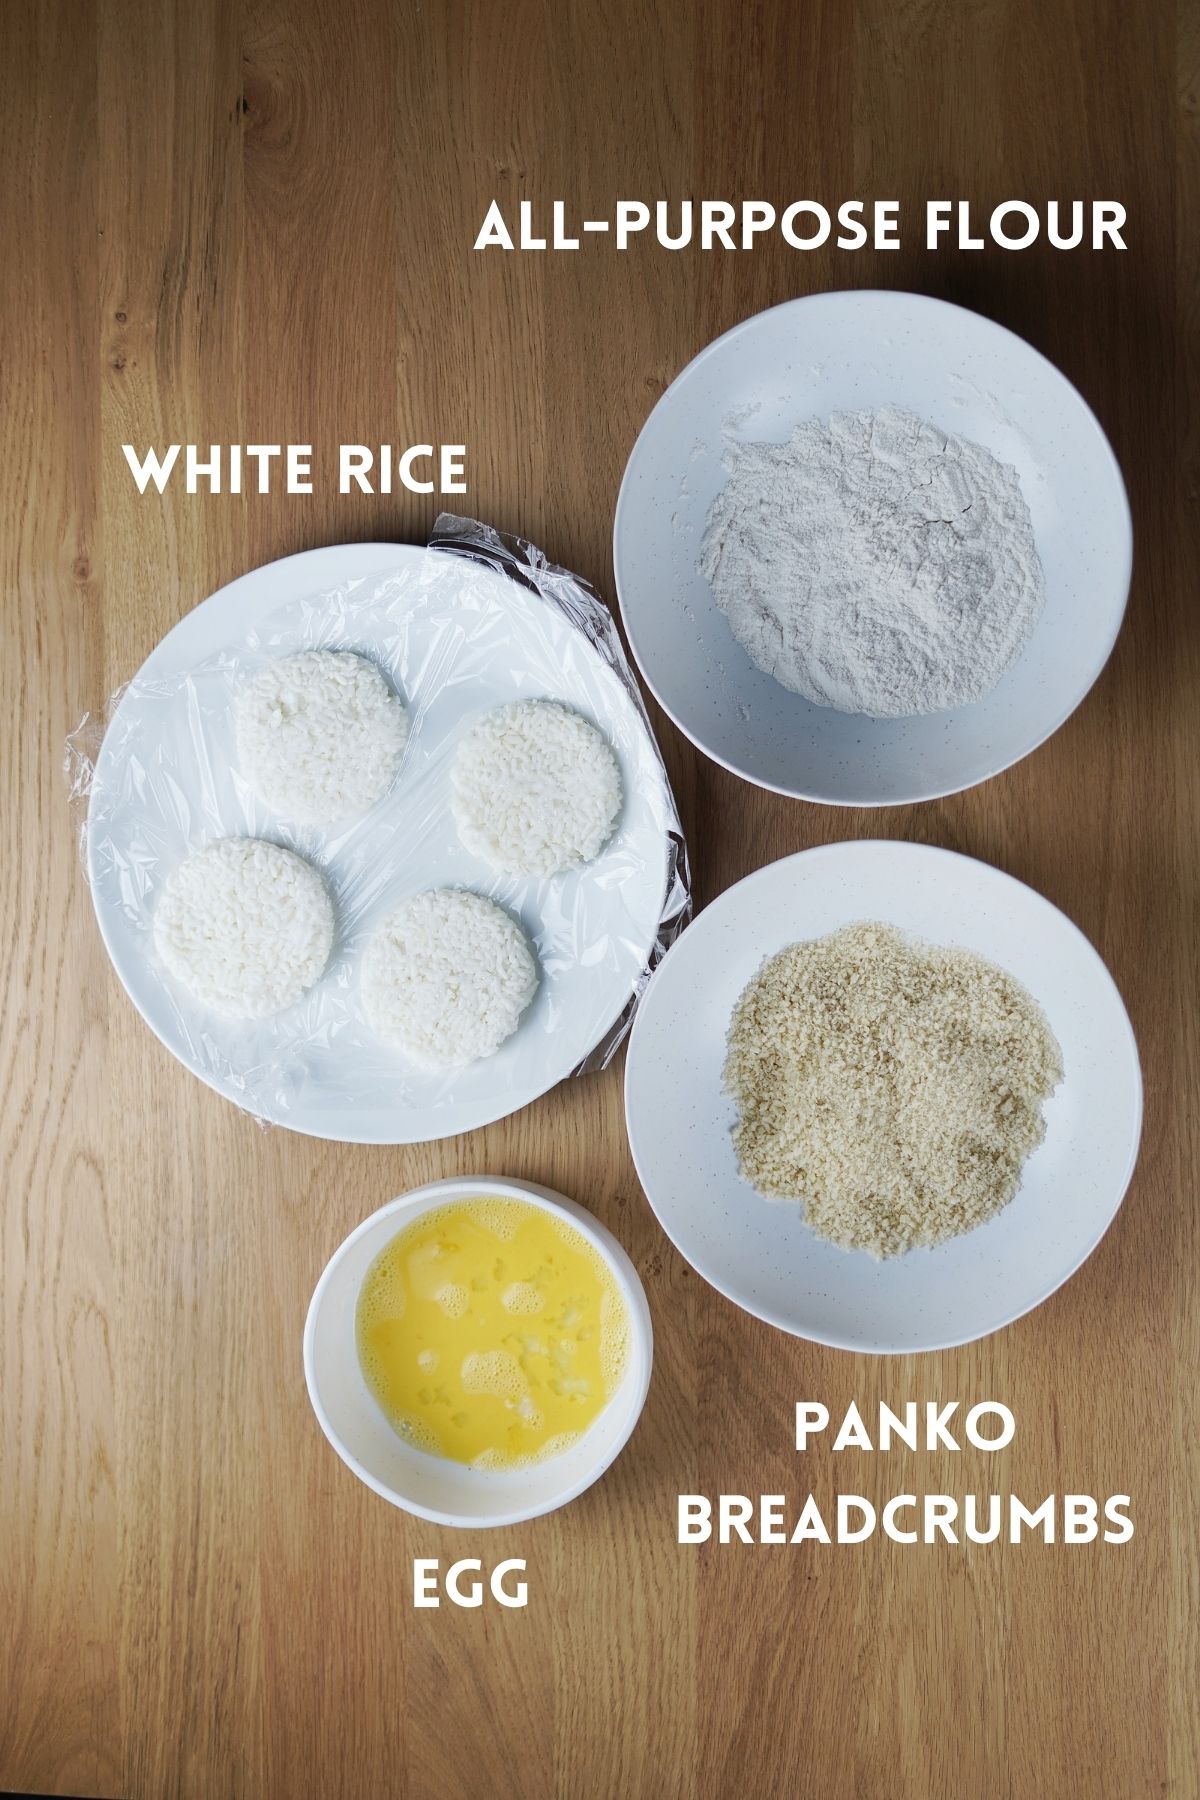 Ingredients to make fried rice patty base